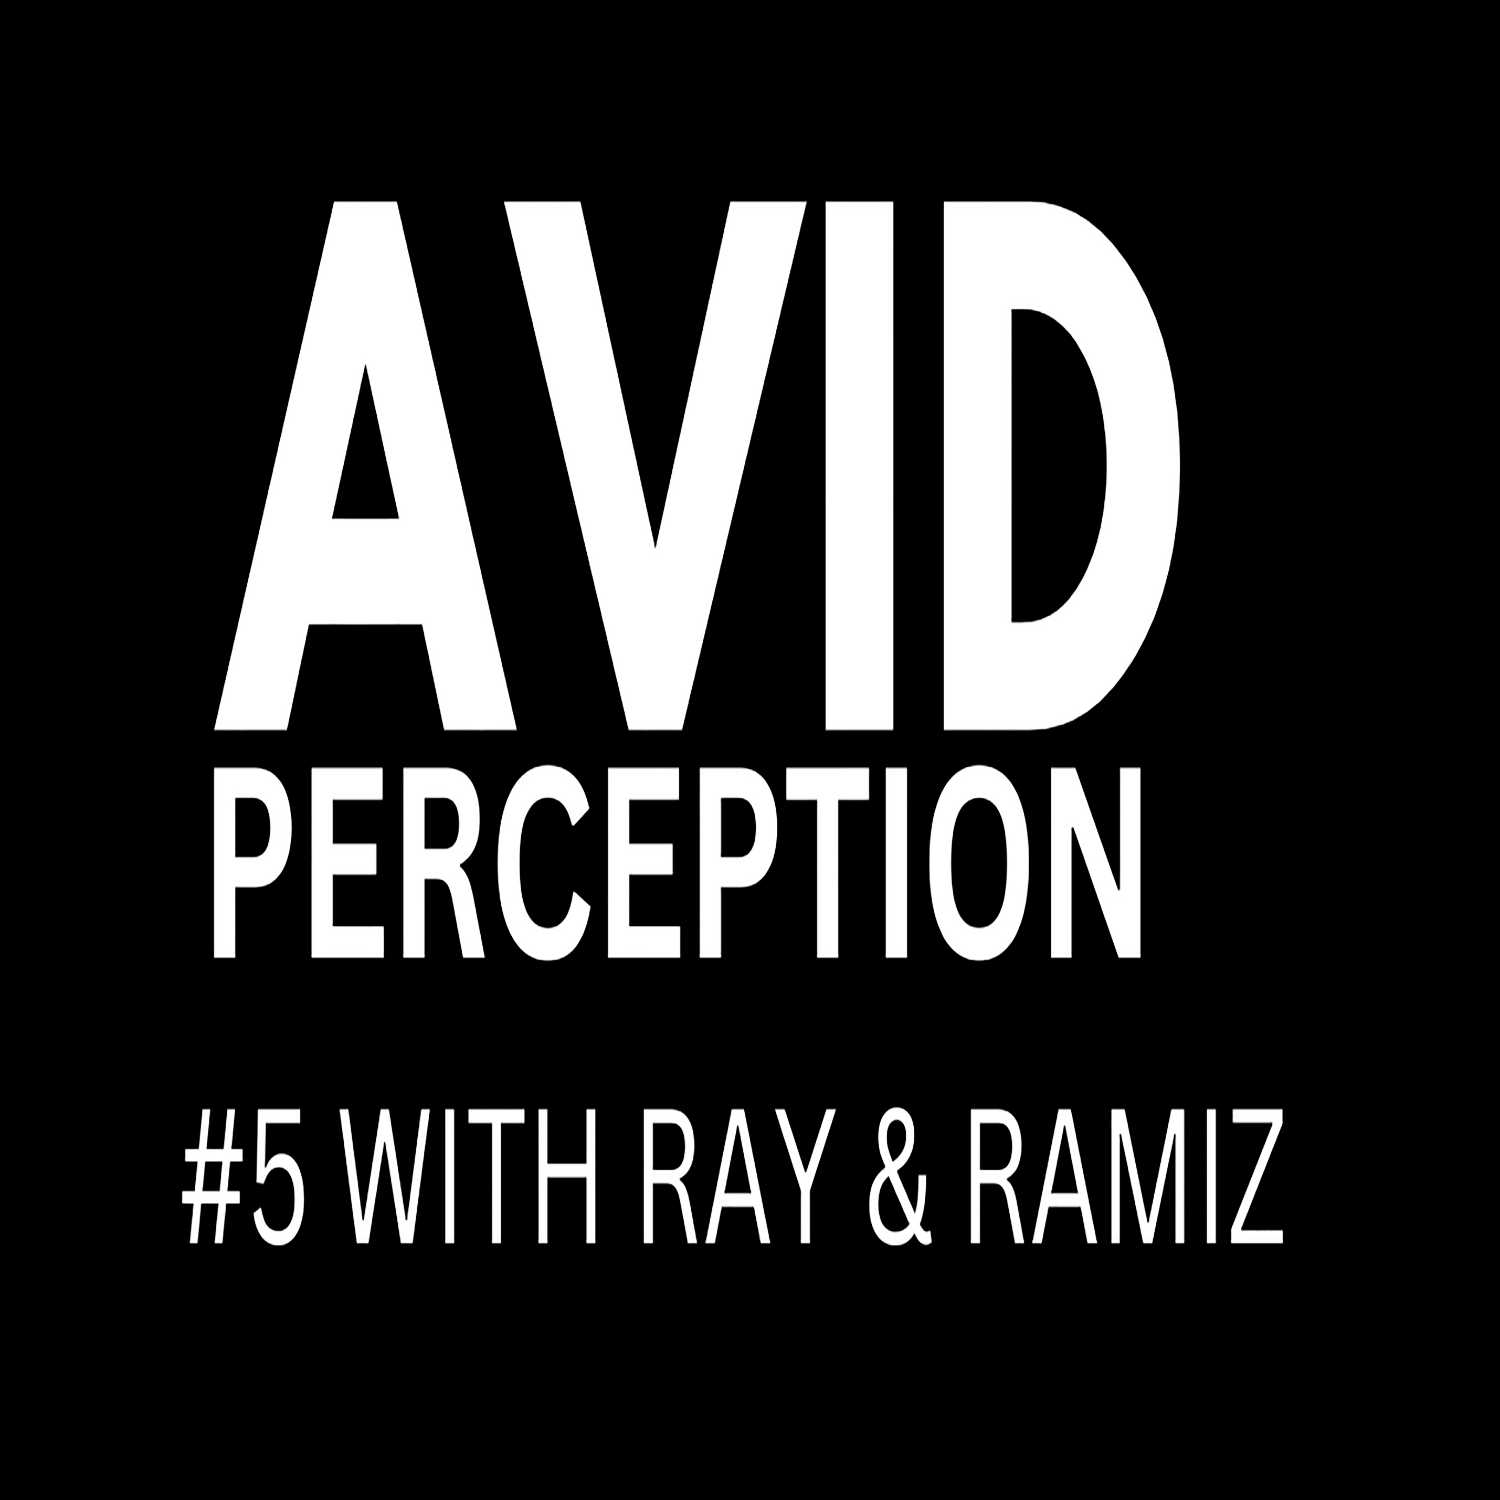 #5 - AVID PERCEPTION WITH RAY & RAMIZ